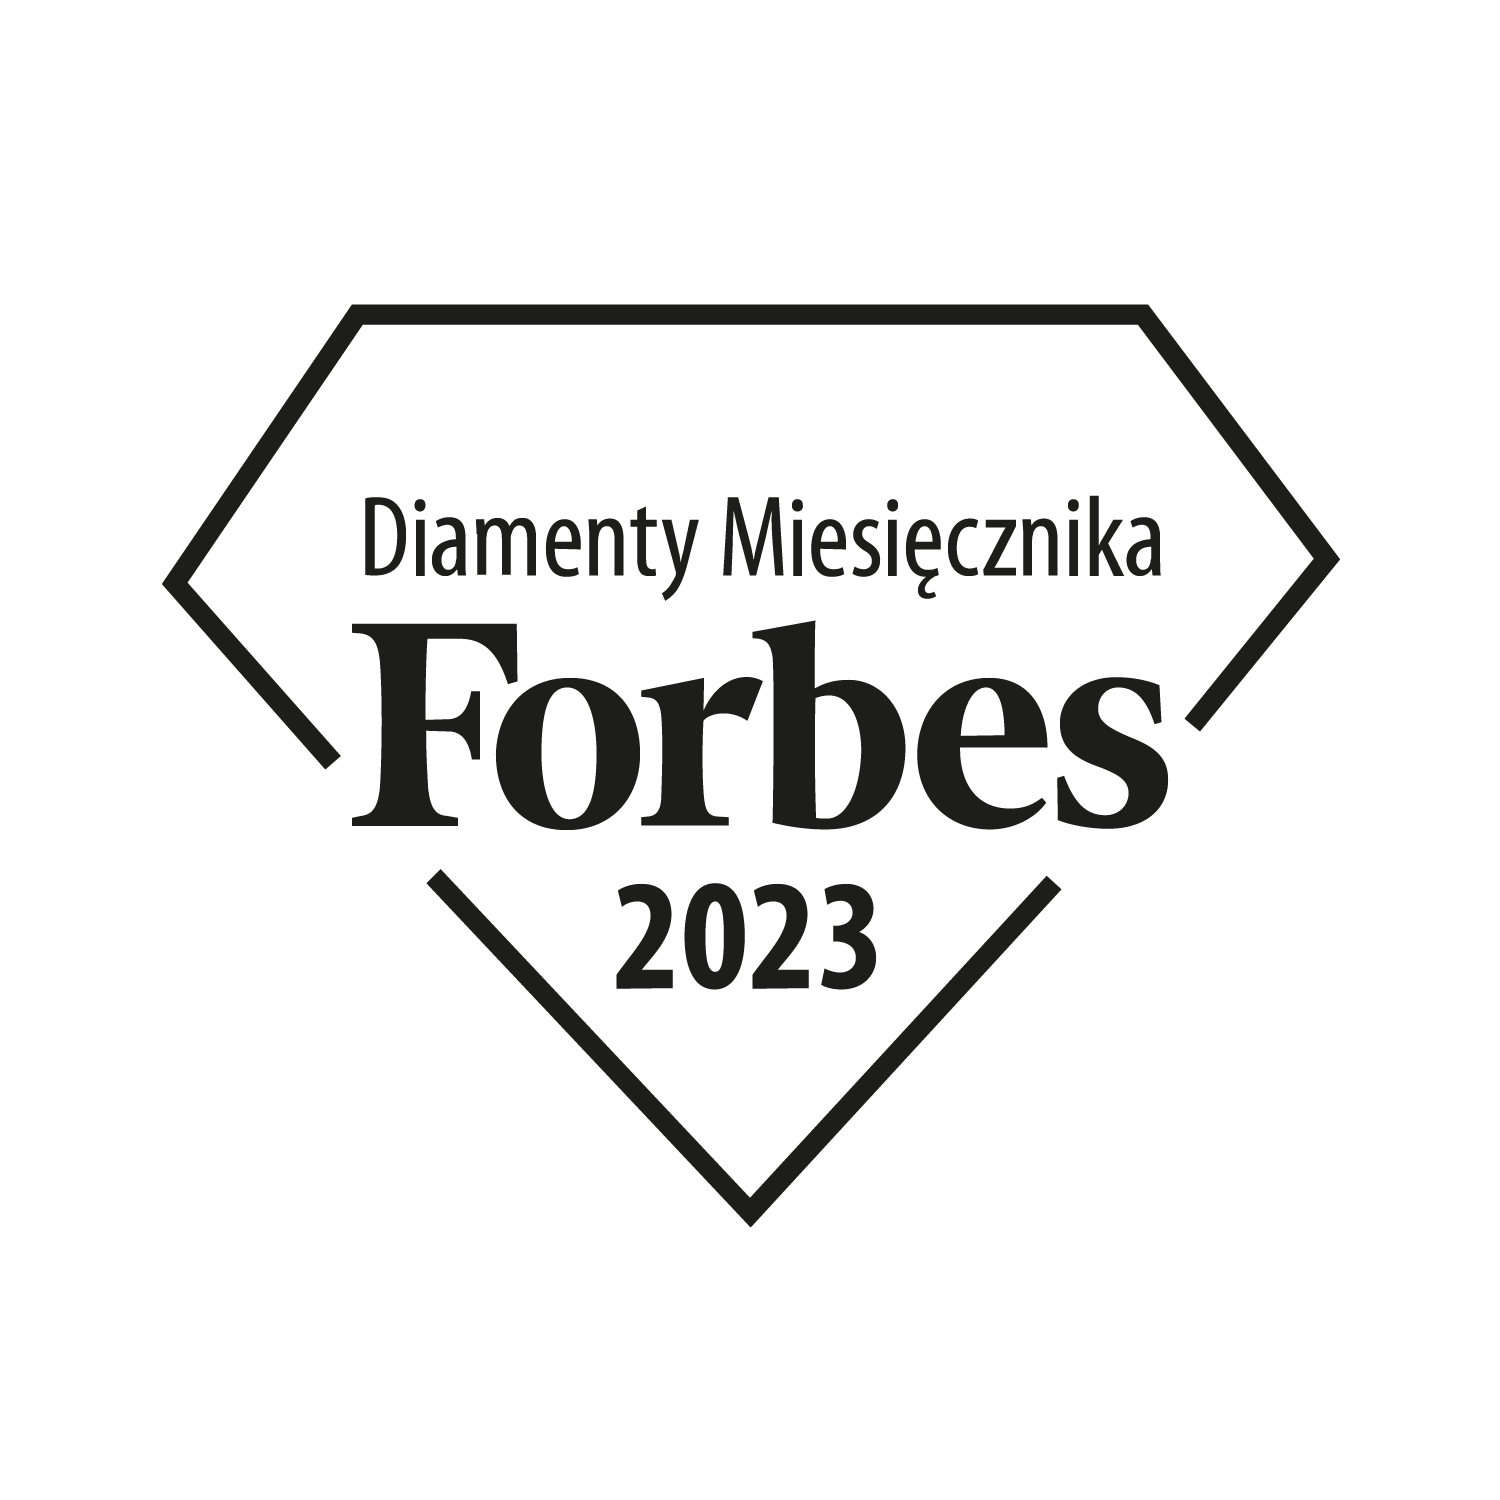 Diamenty Forbesa 2023